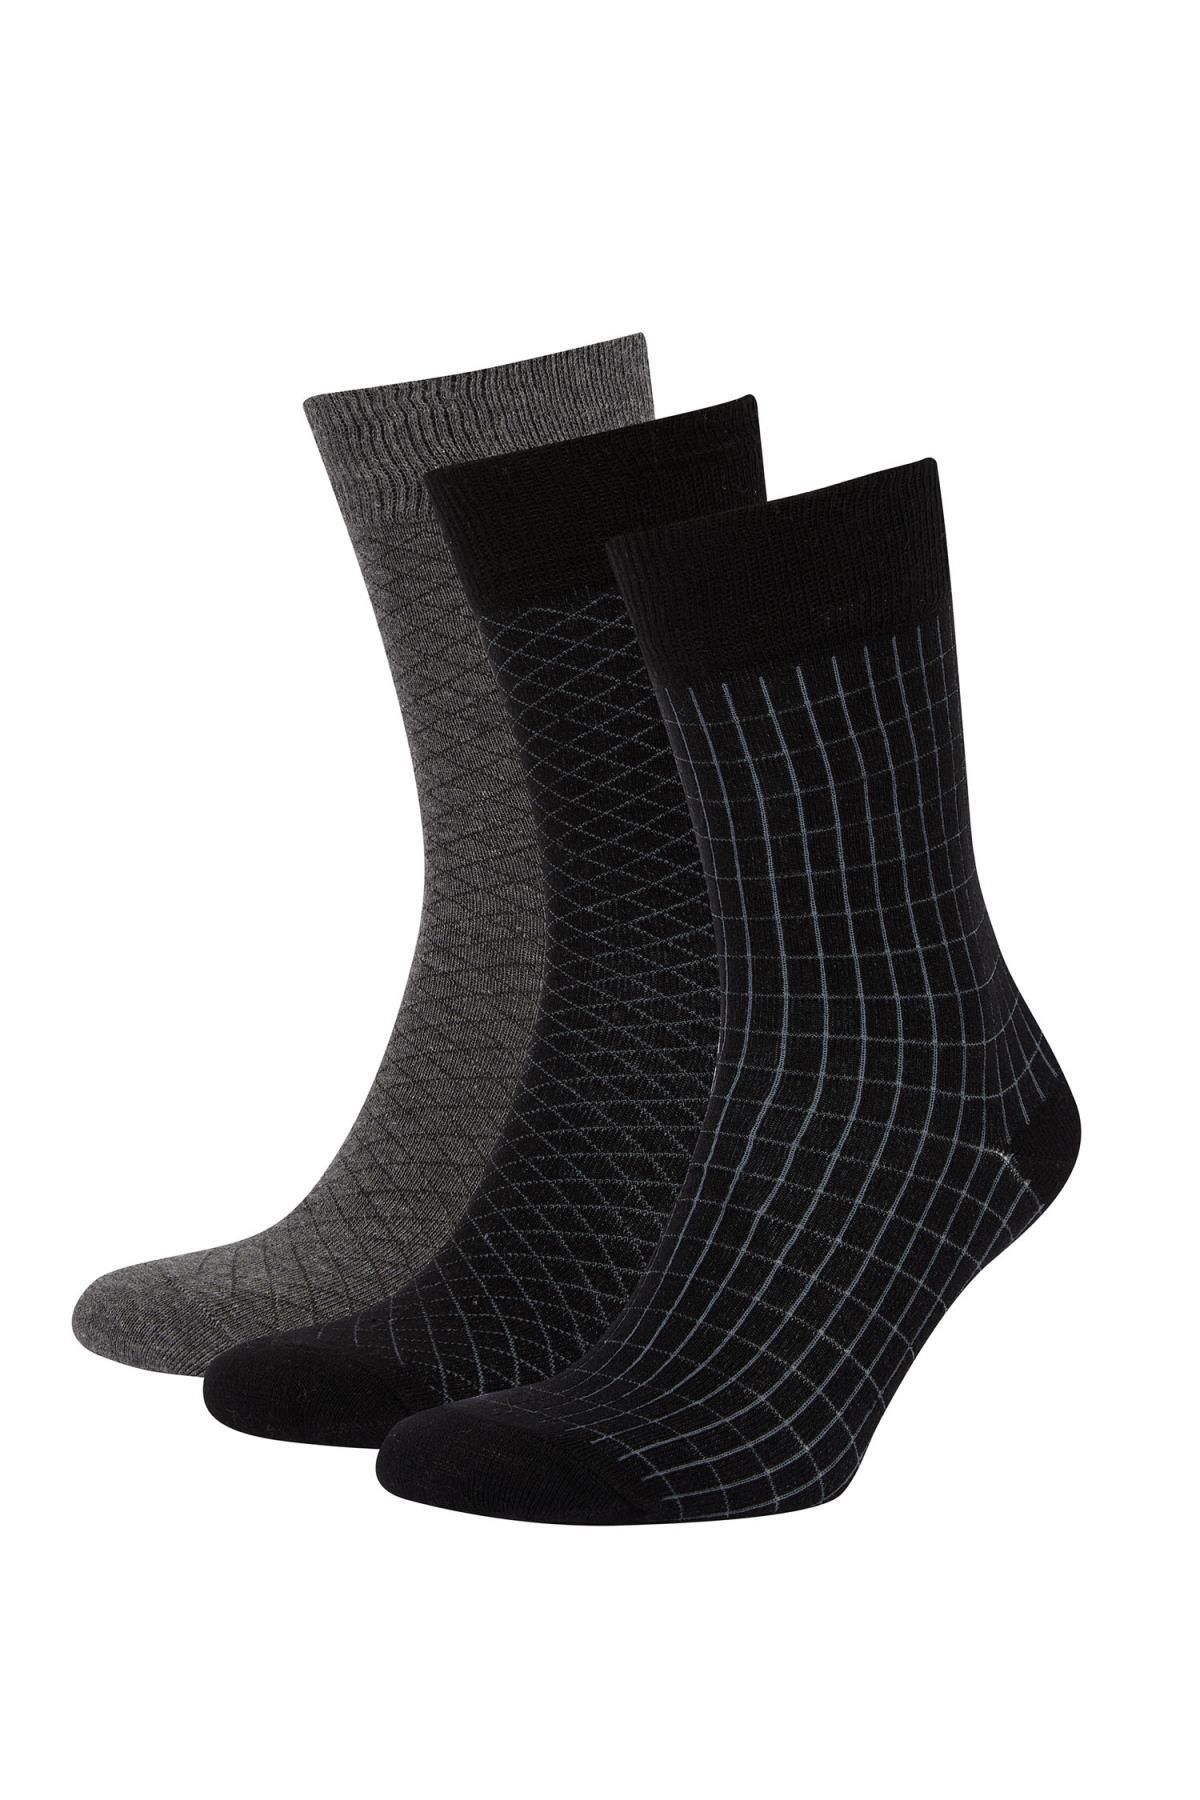 Defacto Erkek Pamuklu 3'lü Soket Çorap R8081azns